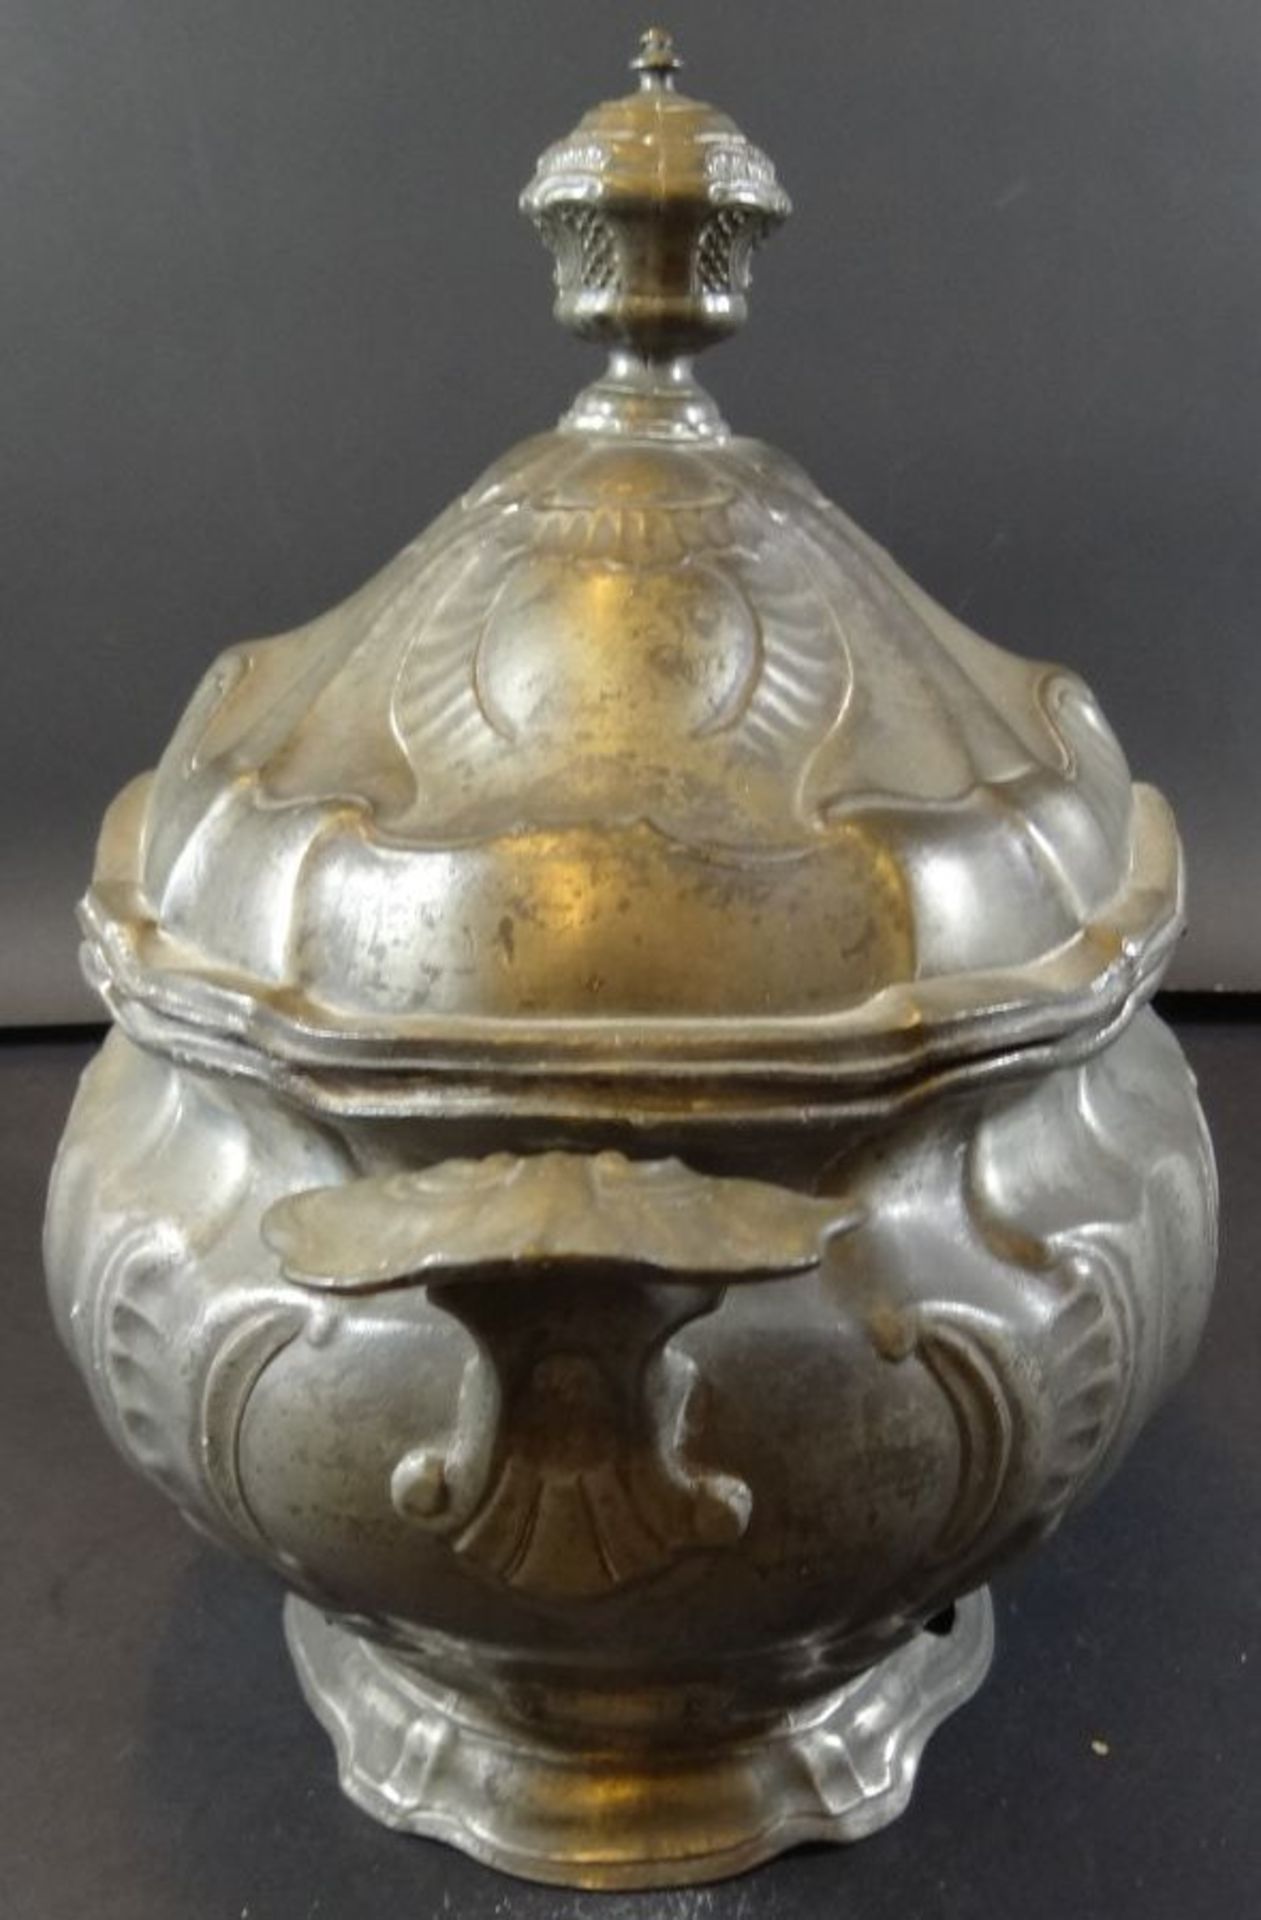 grosse ovale Zinn-Prunkterinne, Engelmarke um 1850, 28 cm, 26x21 cm, Altersspuren - Bild 11 aus 11